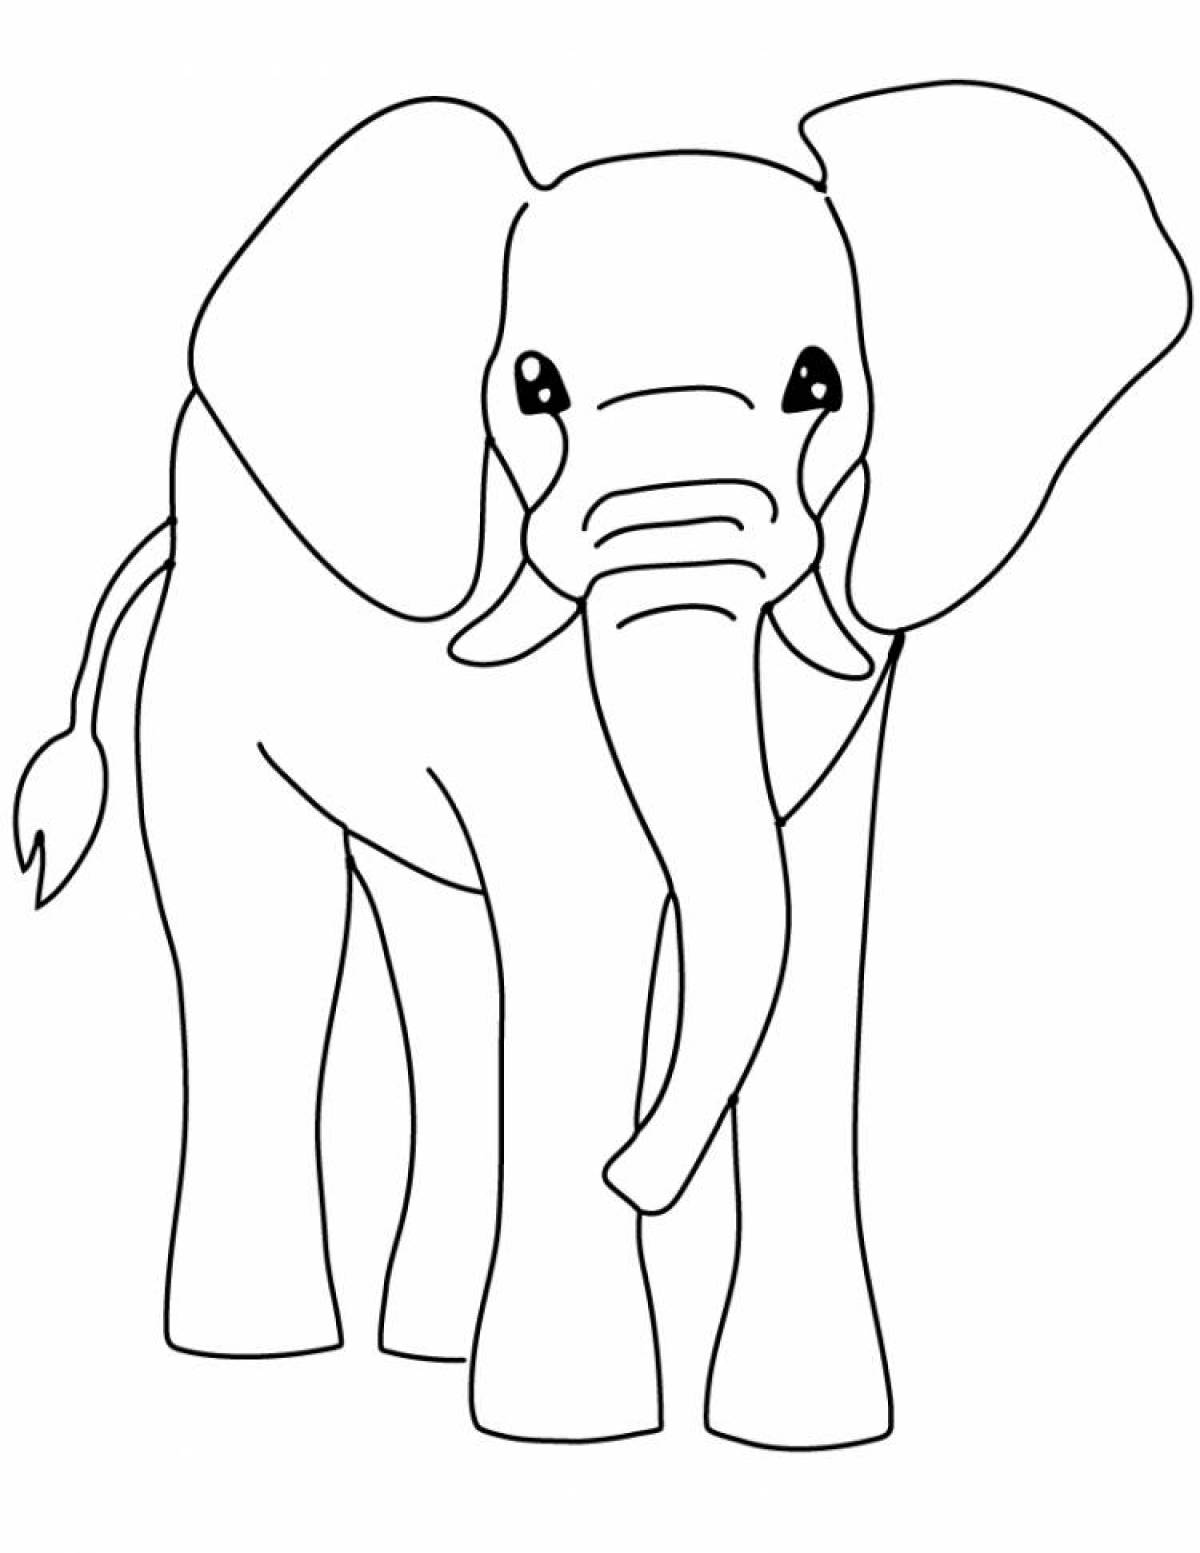 Веселый слон раскраски для детей